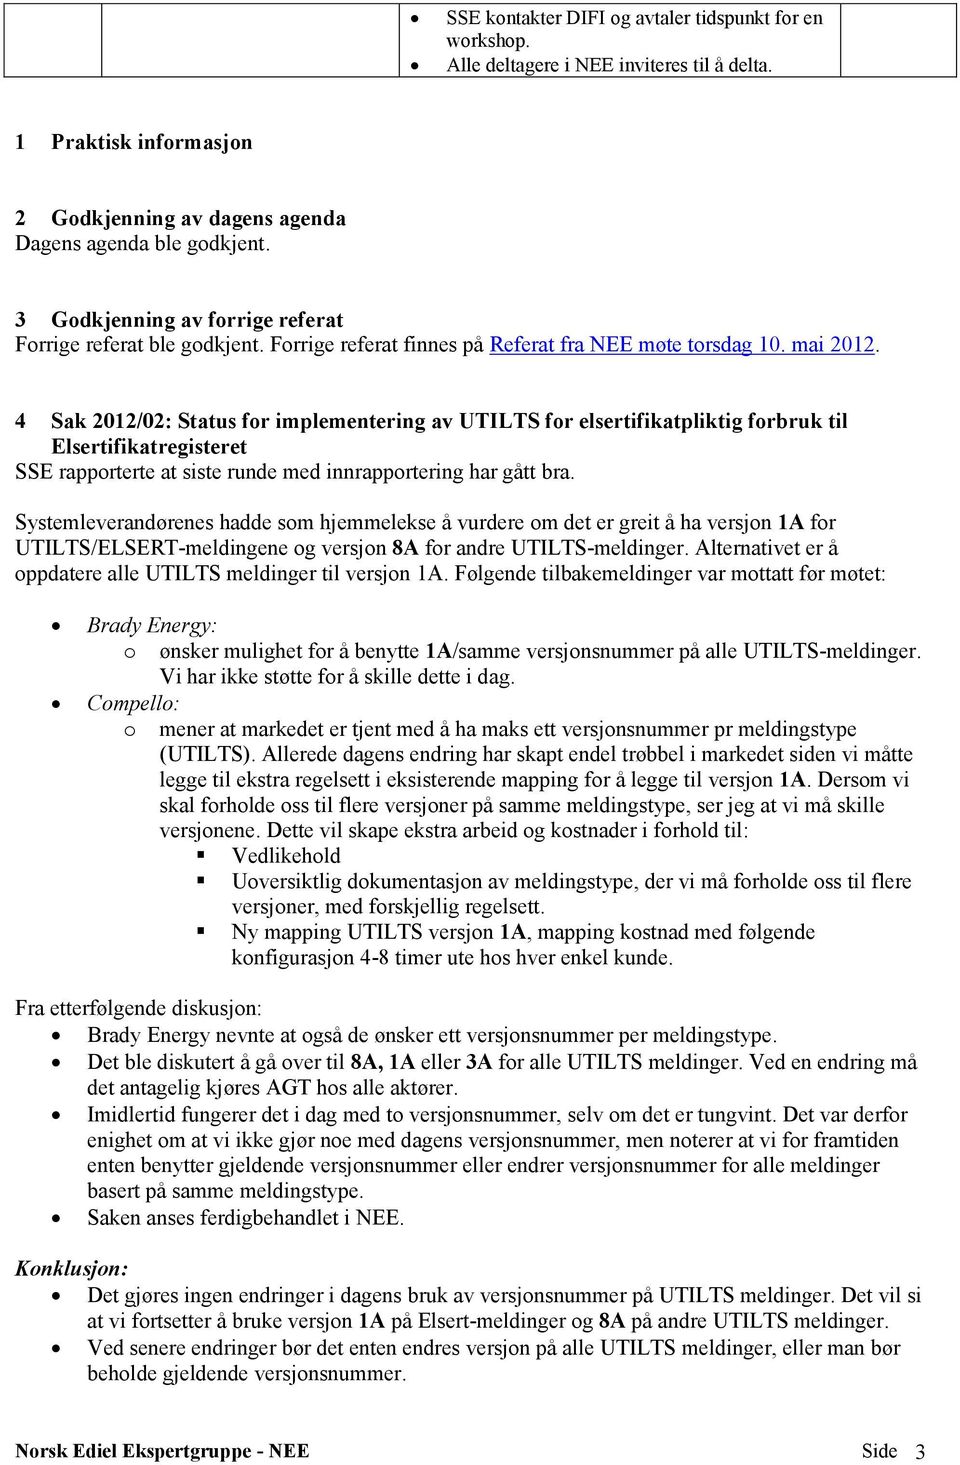 4 Sak 2012/02: Status for implementering av UTILTS for elsertifikatpliktig forbruk til Elsertifikatregisteret SSE rapporterte at siste runde med innrapportering har gått bra.